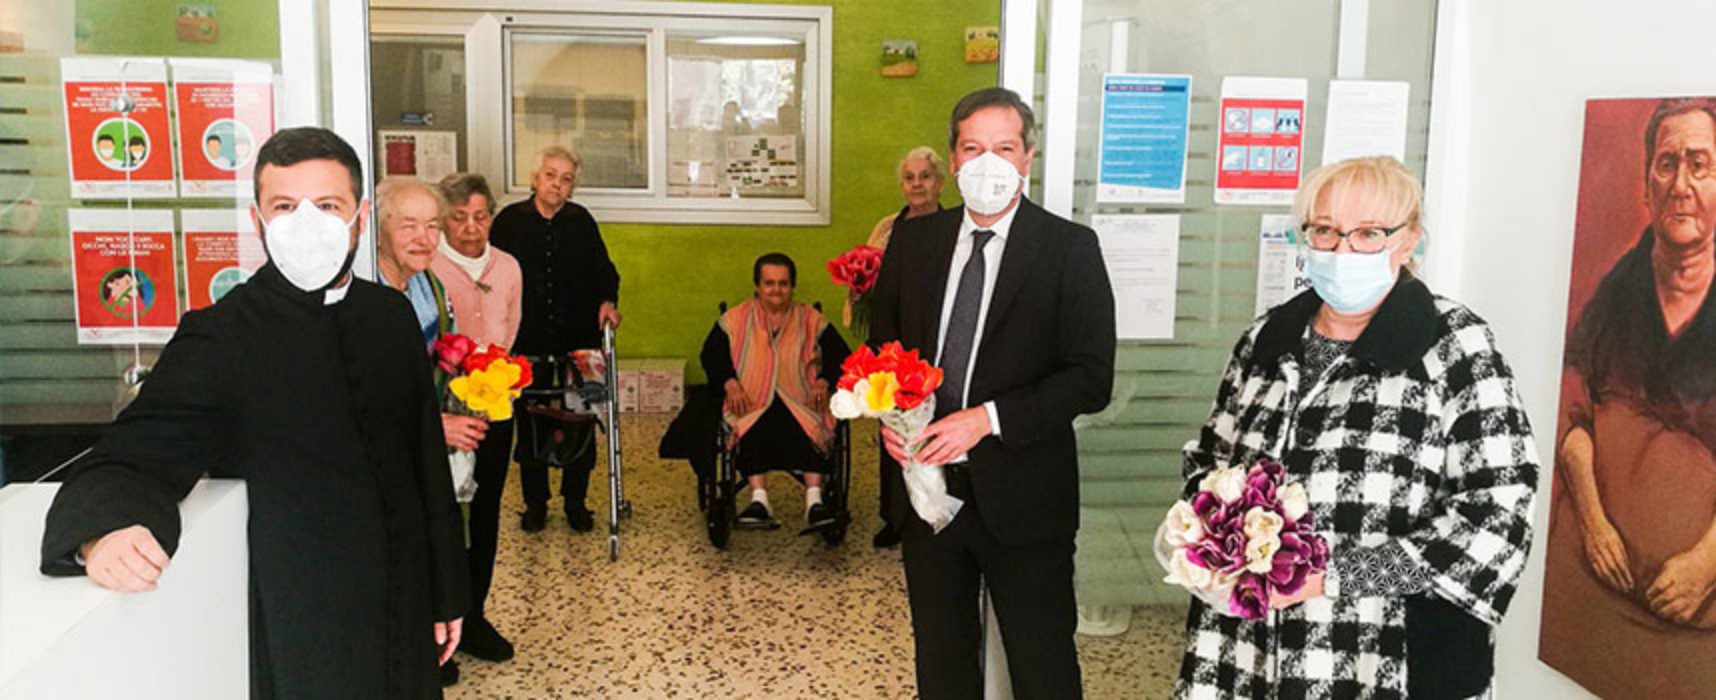 Comune dona 200 tulipani sospesi a RSA, Angarano: “Far sentire affetto e vicinanza” / FOTO